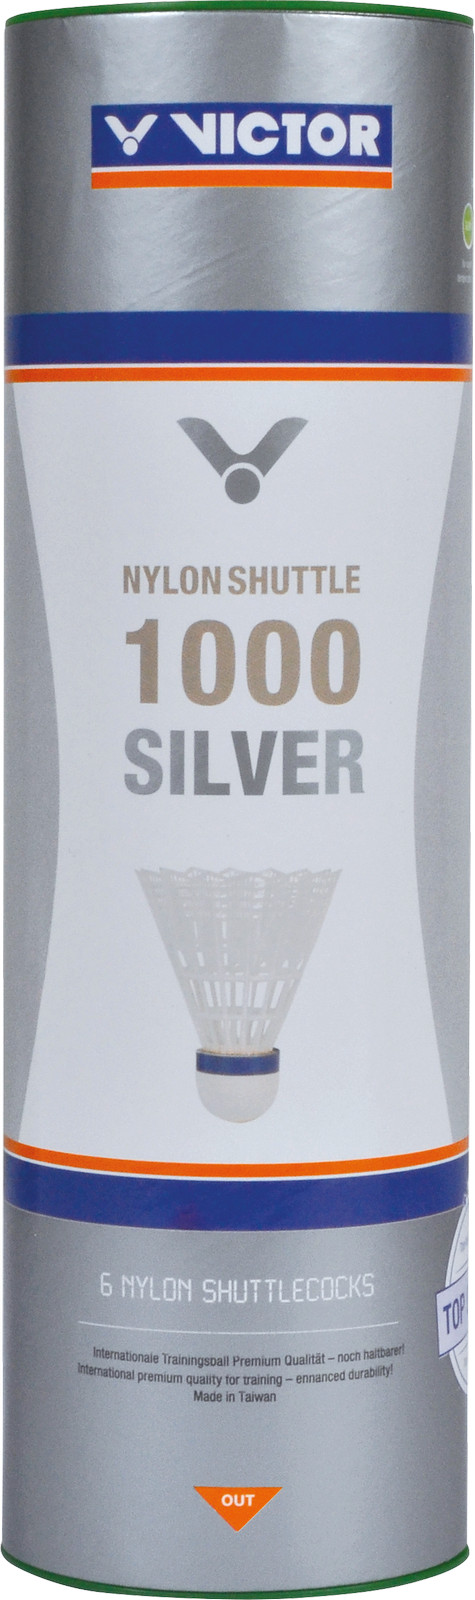 Victor Badmintonbälle Nylon Shuttle 1000 Silver 3er-Set